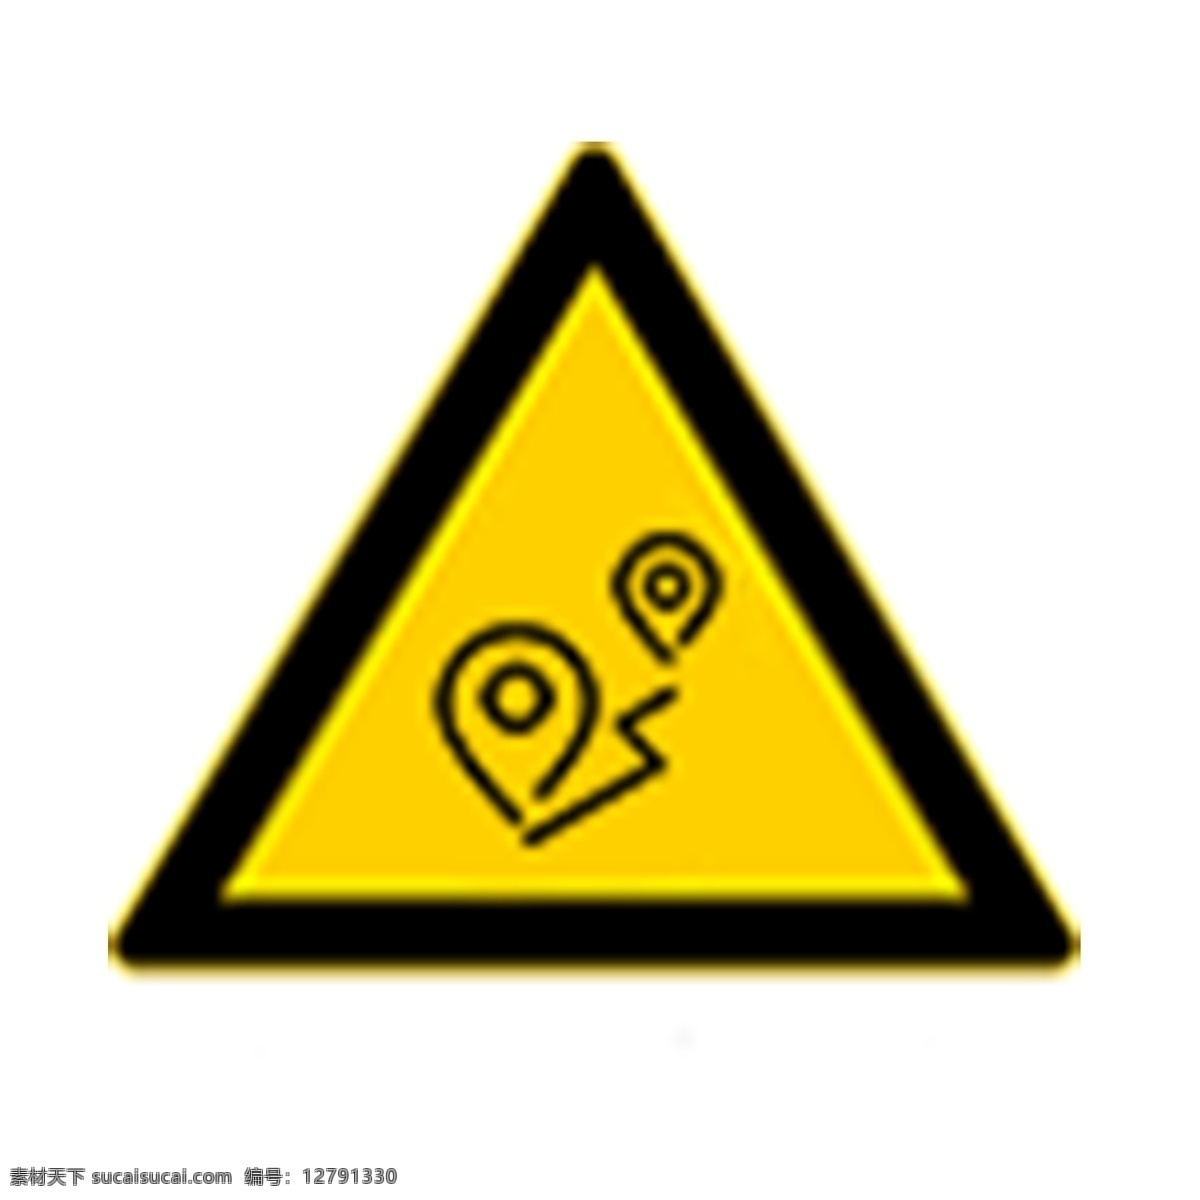 黄色三角标志 三角 交通标志 规则